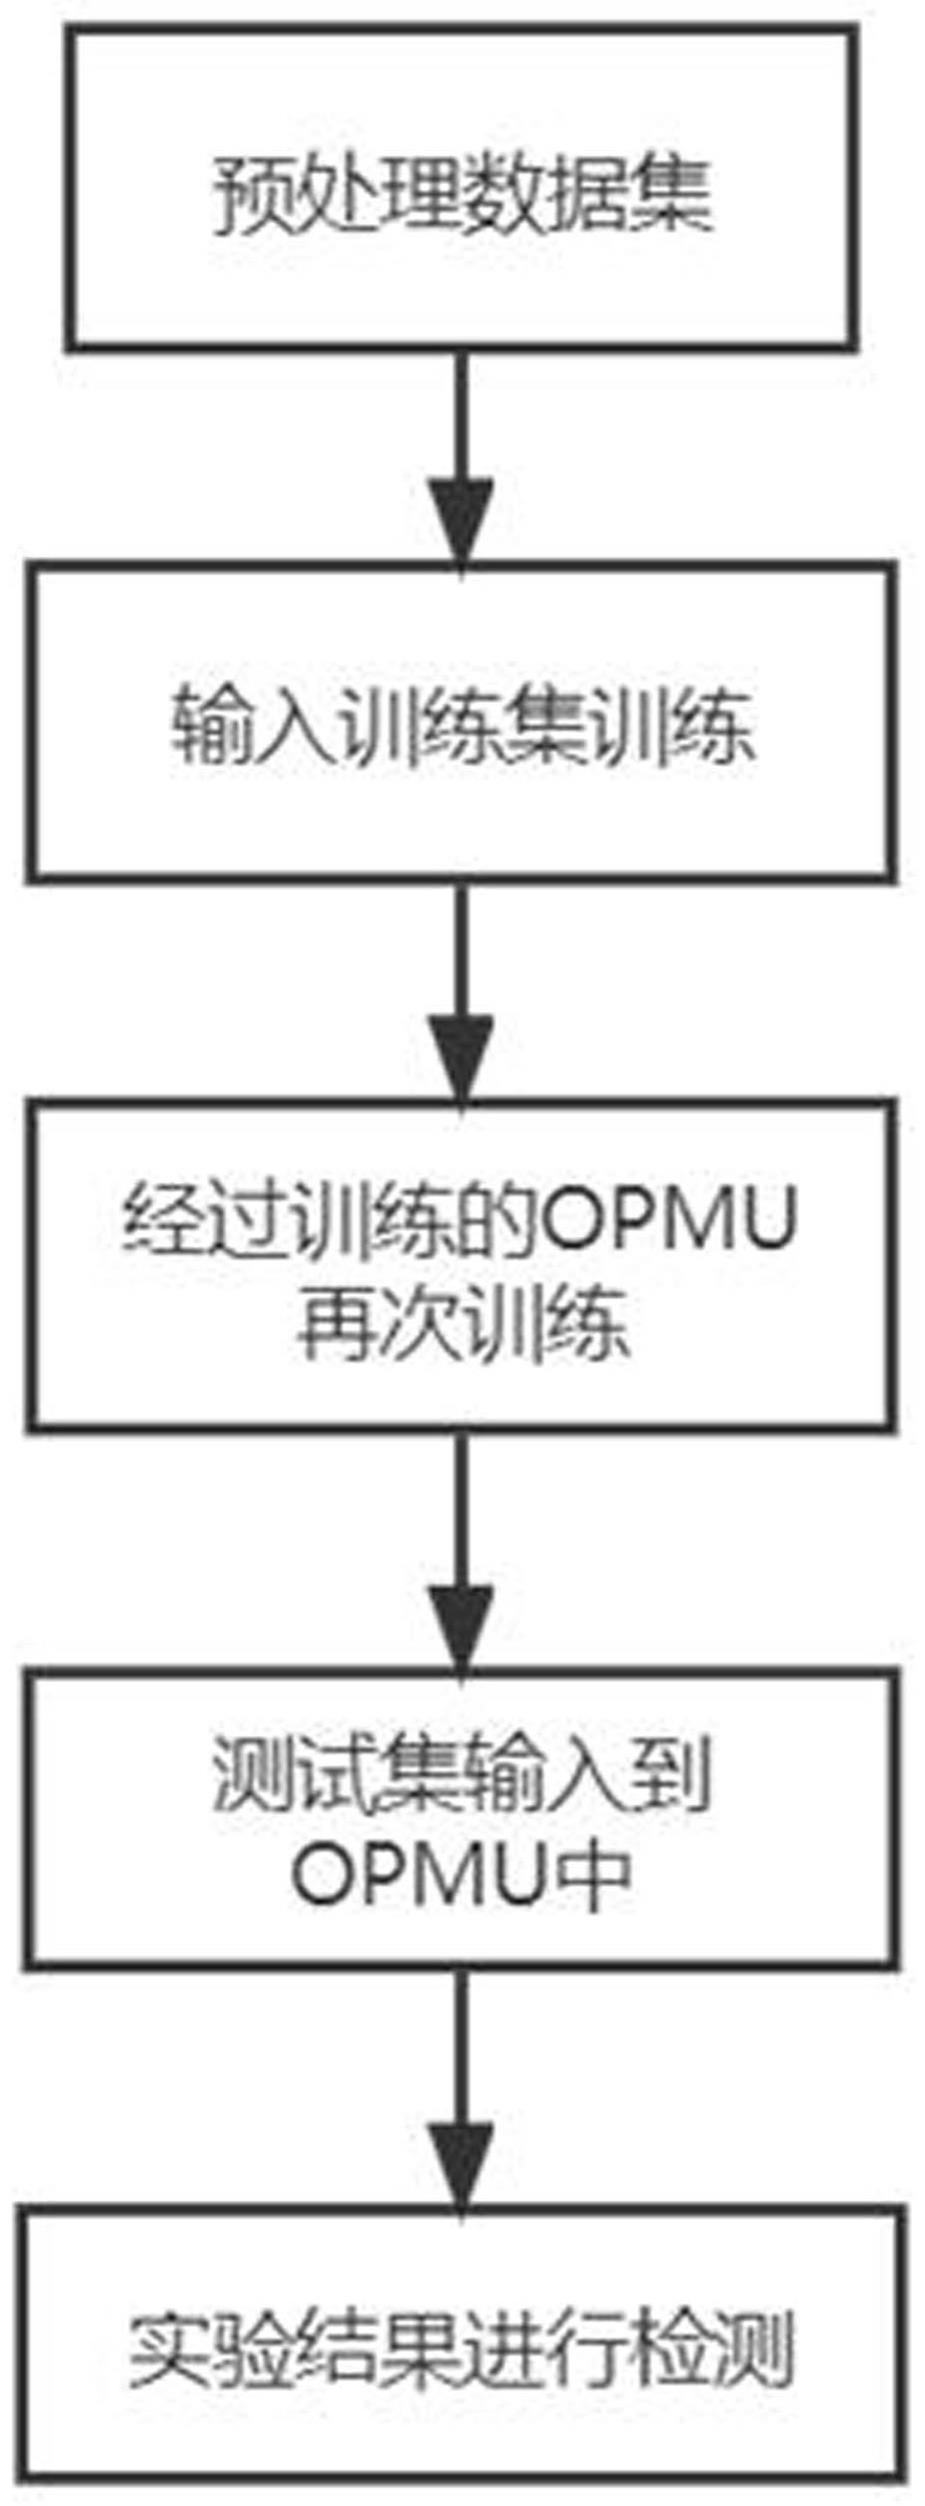 一种物联网环境中基于DEPMU的流量异常检测方法与流程